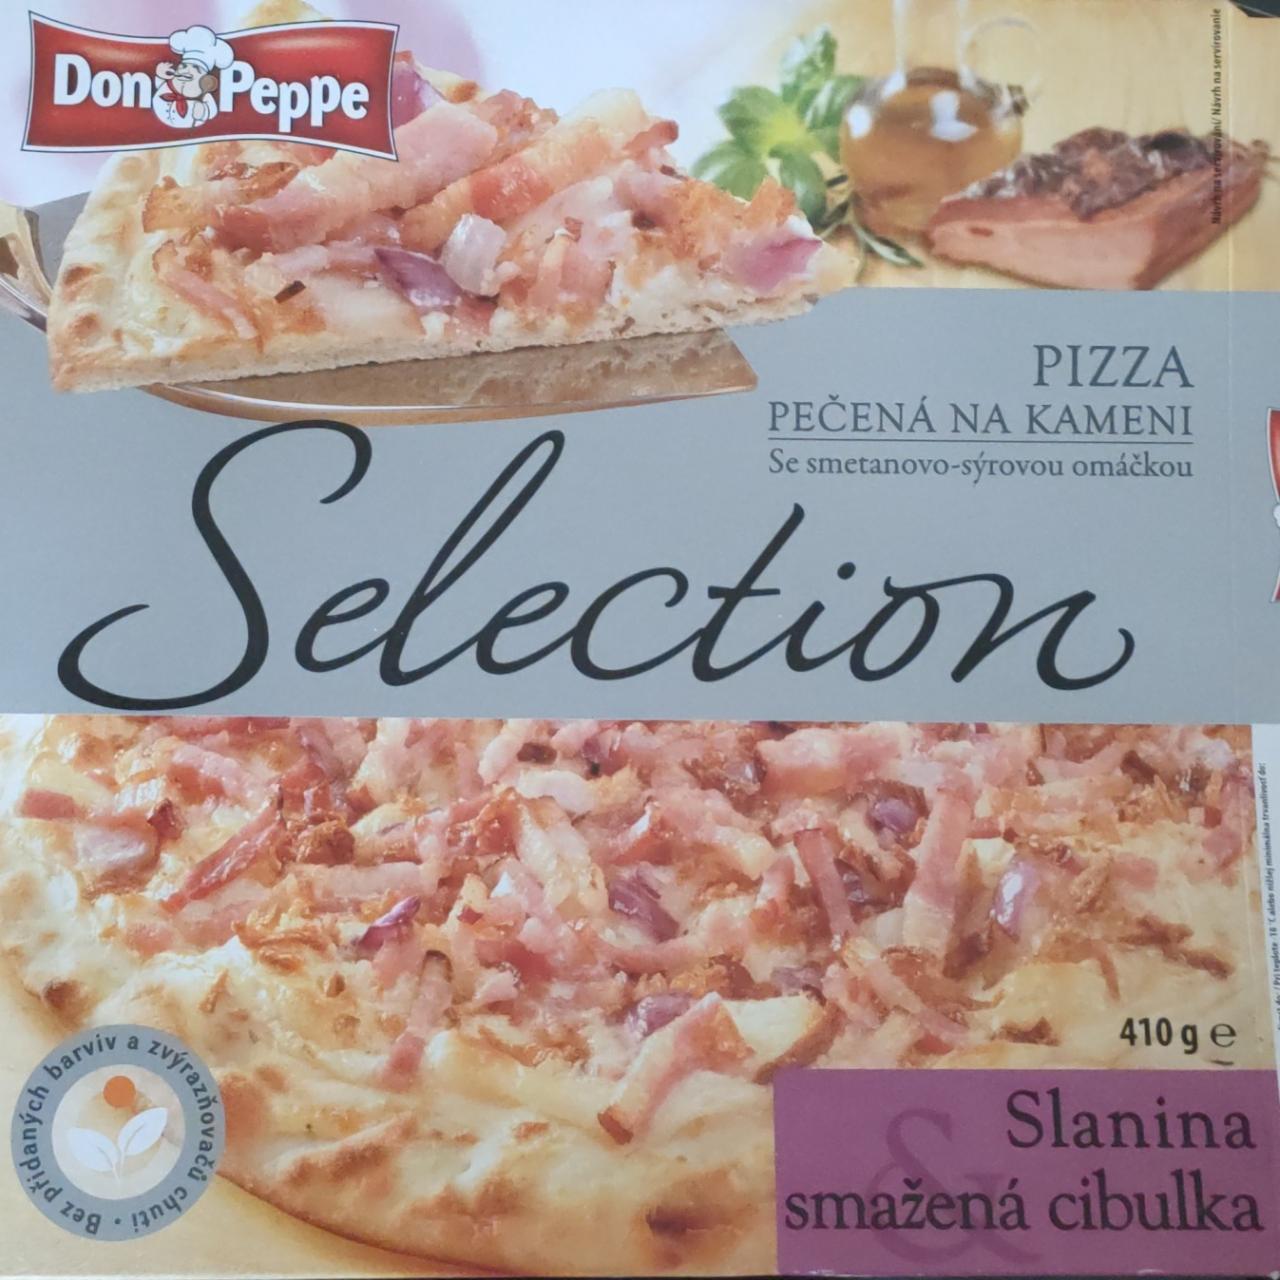 Fotografie - Selection Pizza pečená na kameni Slanina & smažená cibulka Don Peppe